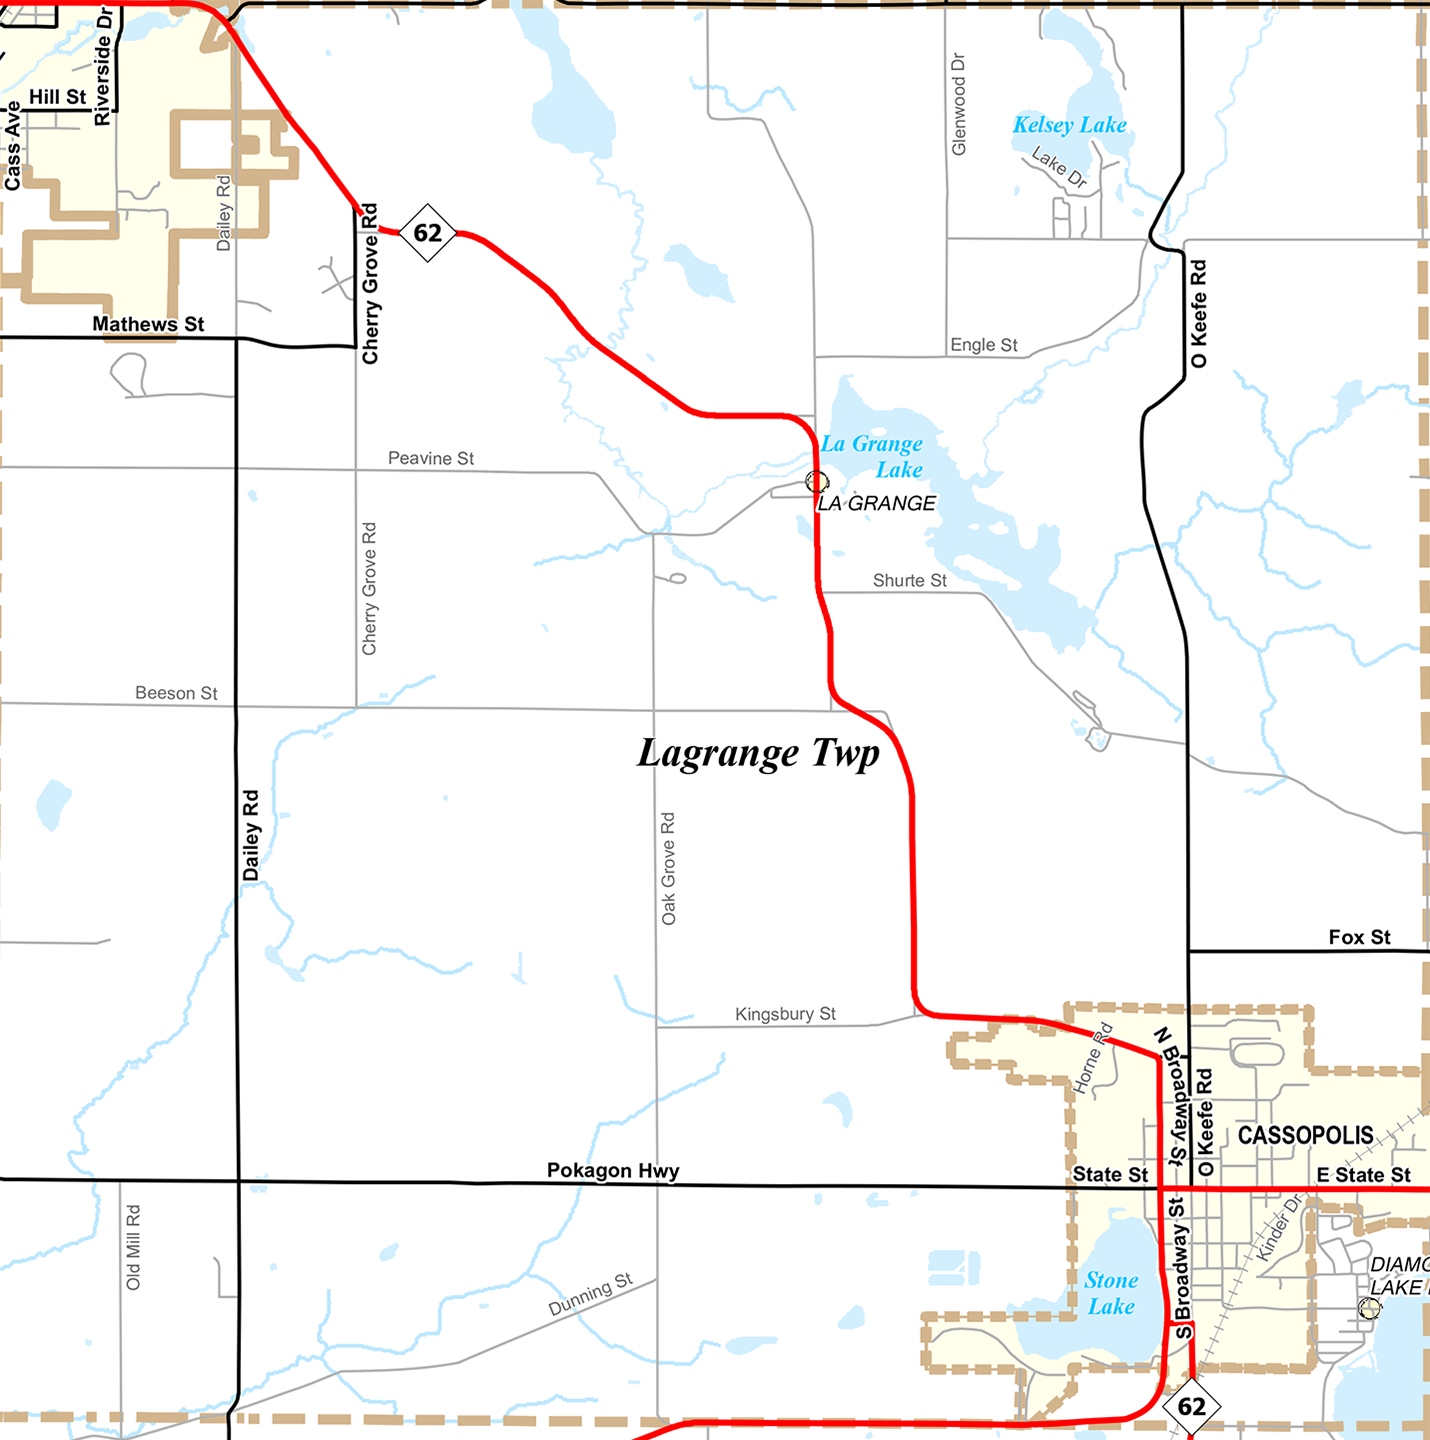 2010 Lagrange Township Michigan landownership map